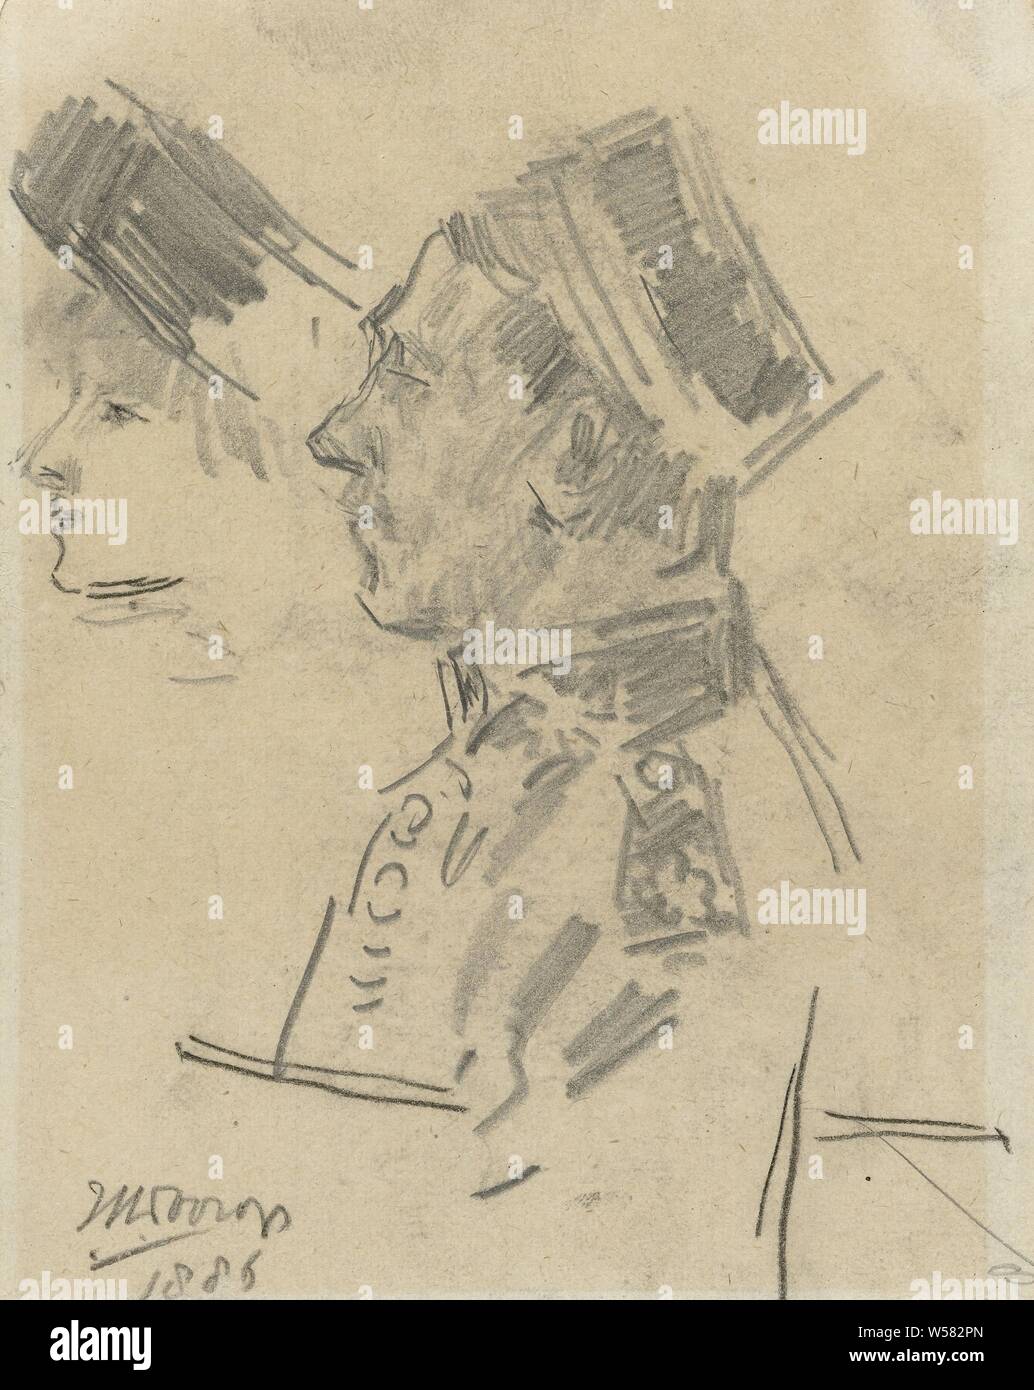 Offizier der indischen Armee und das Profil der Dame mit einem Hut, Jan Toorop, 1886, Papier, Bleistift, Kreide, H 125 mm x B 96 mm Stockfoto